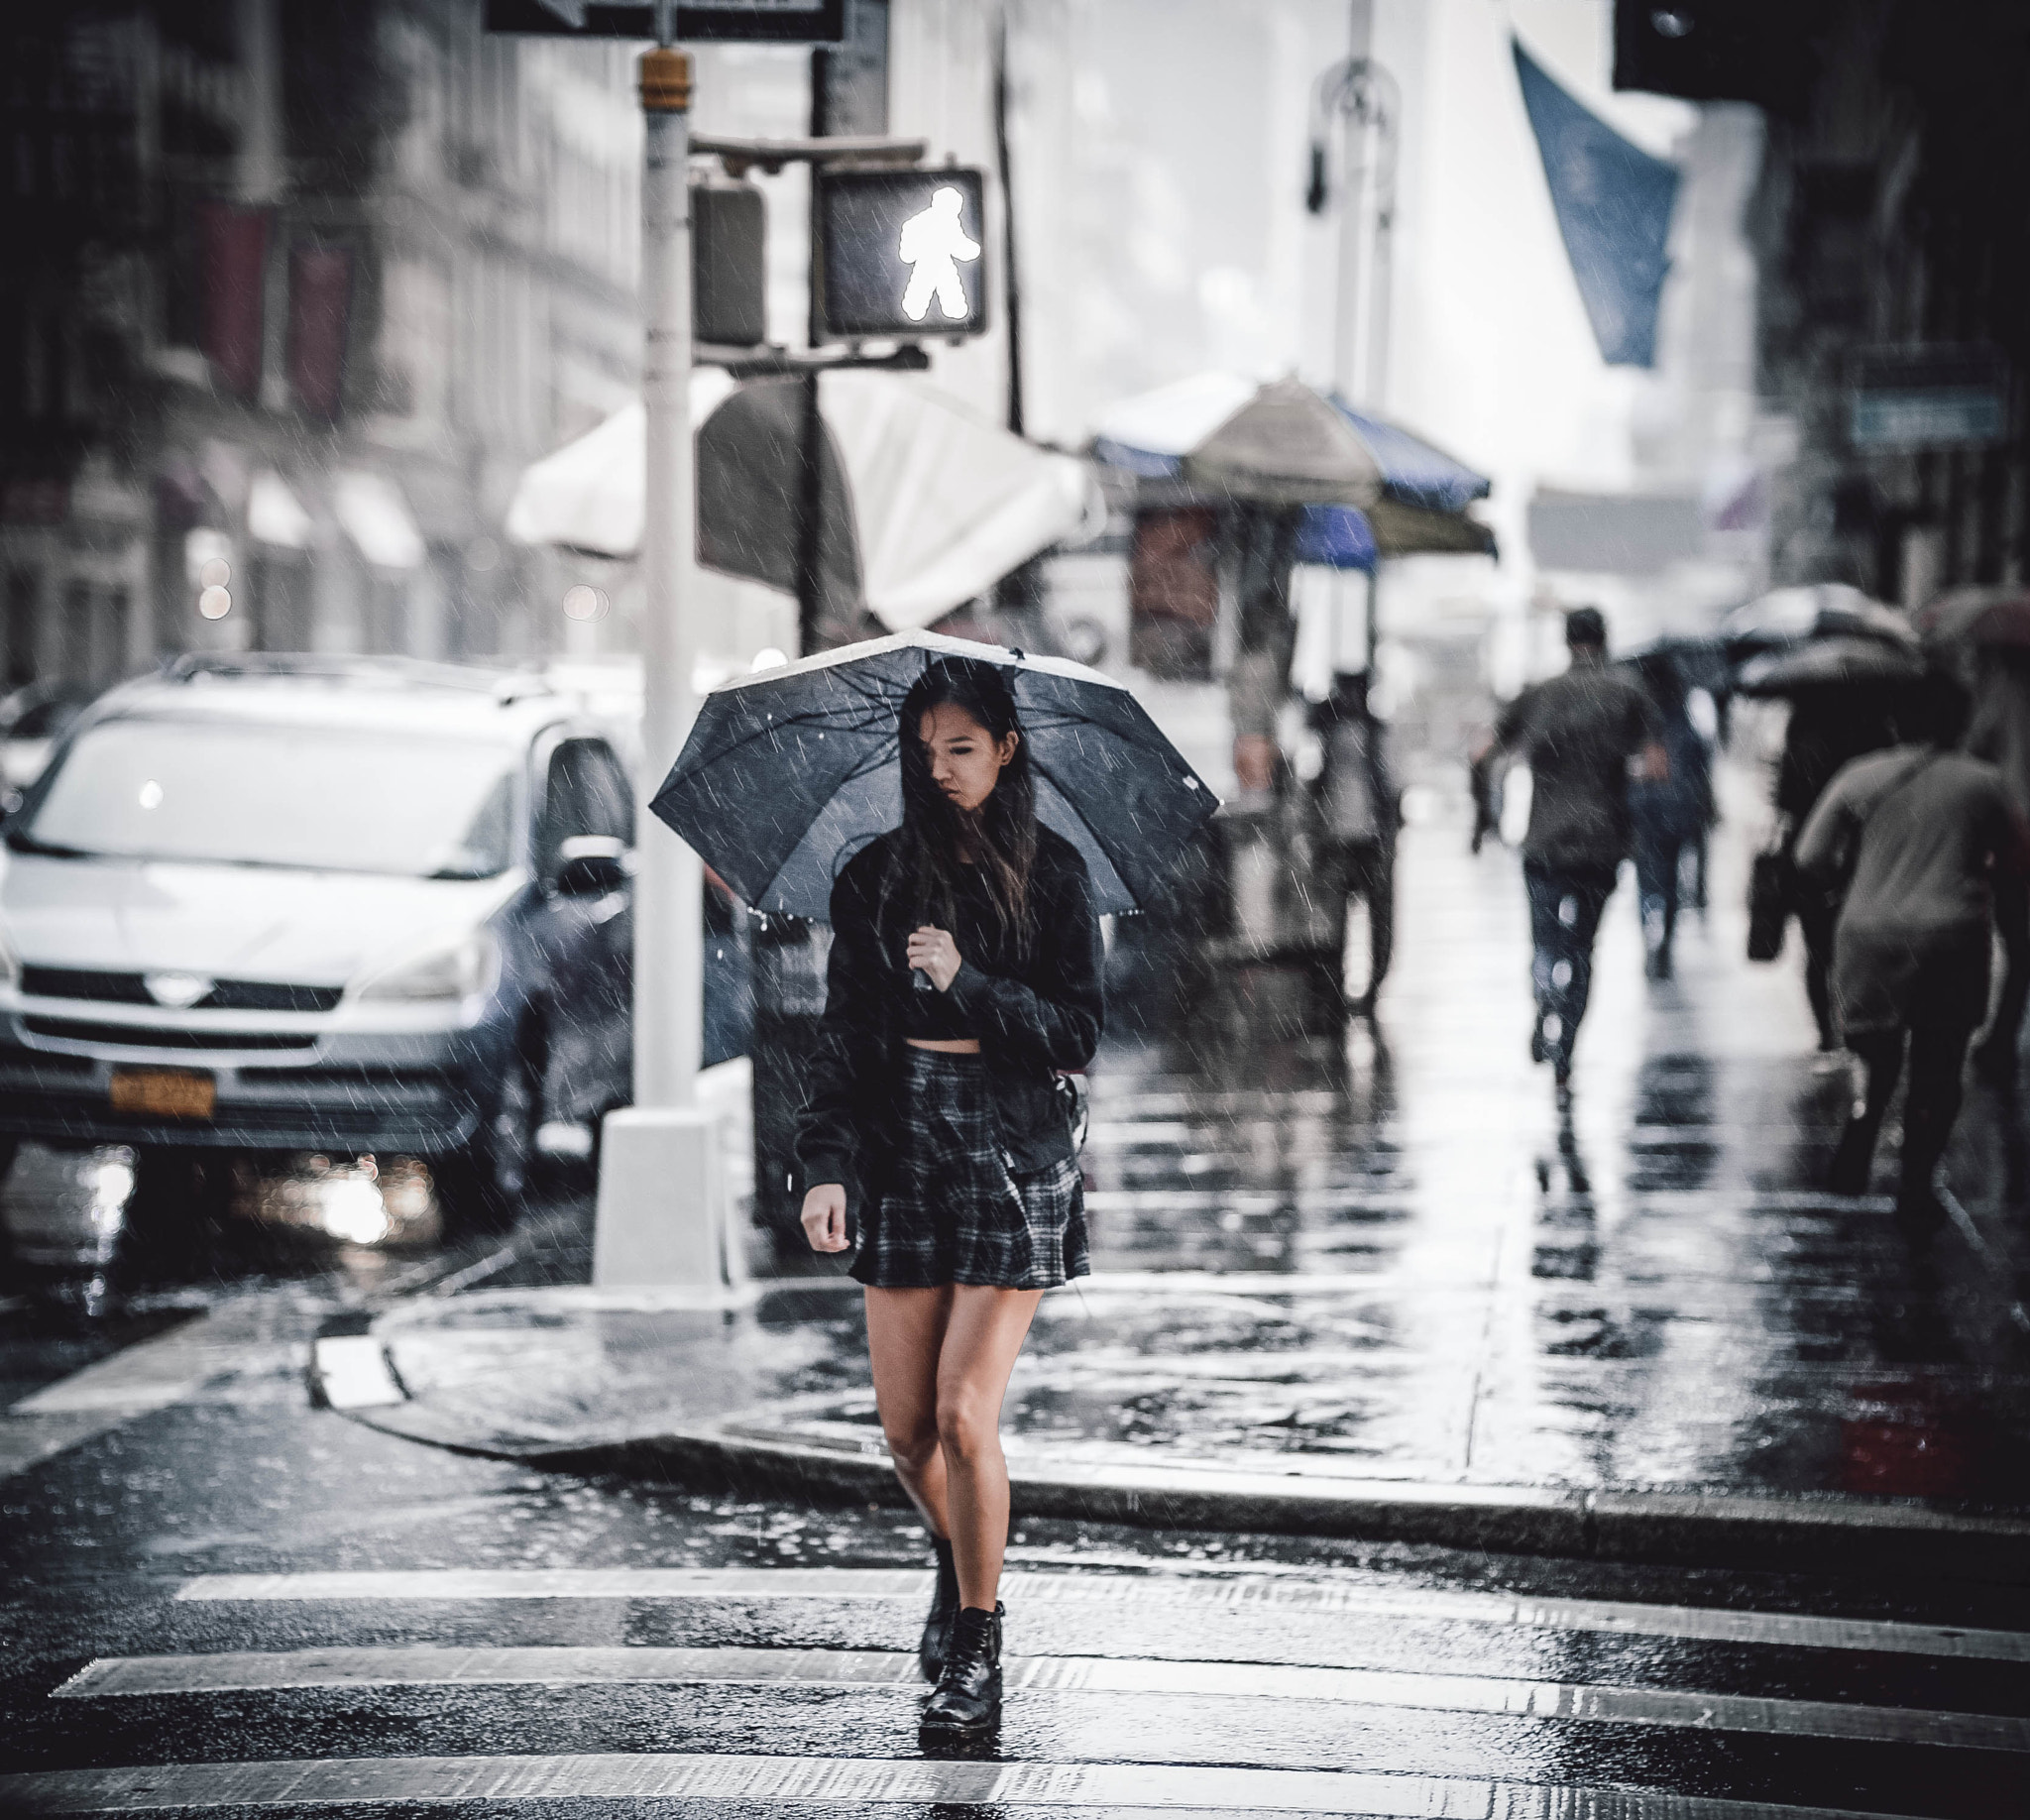 Nikon Df sample photo. Umbrella girl photography